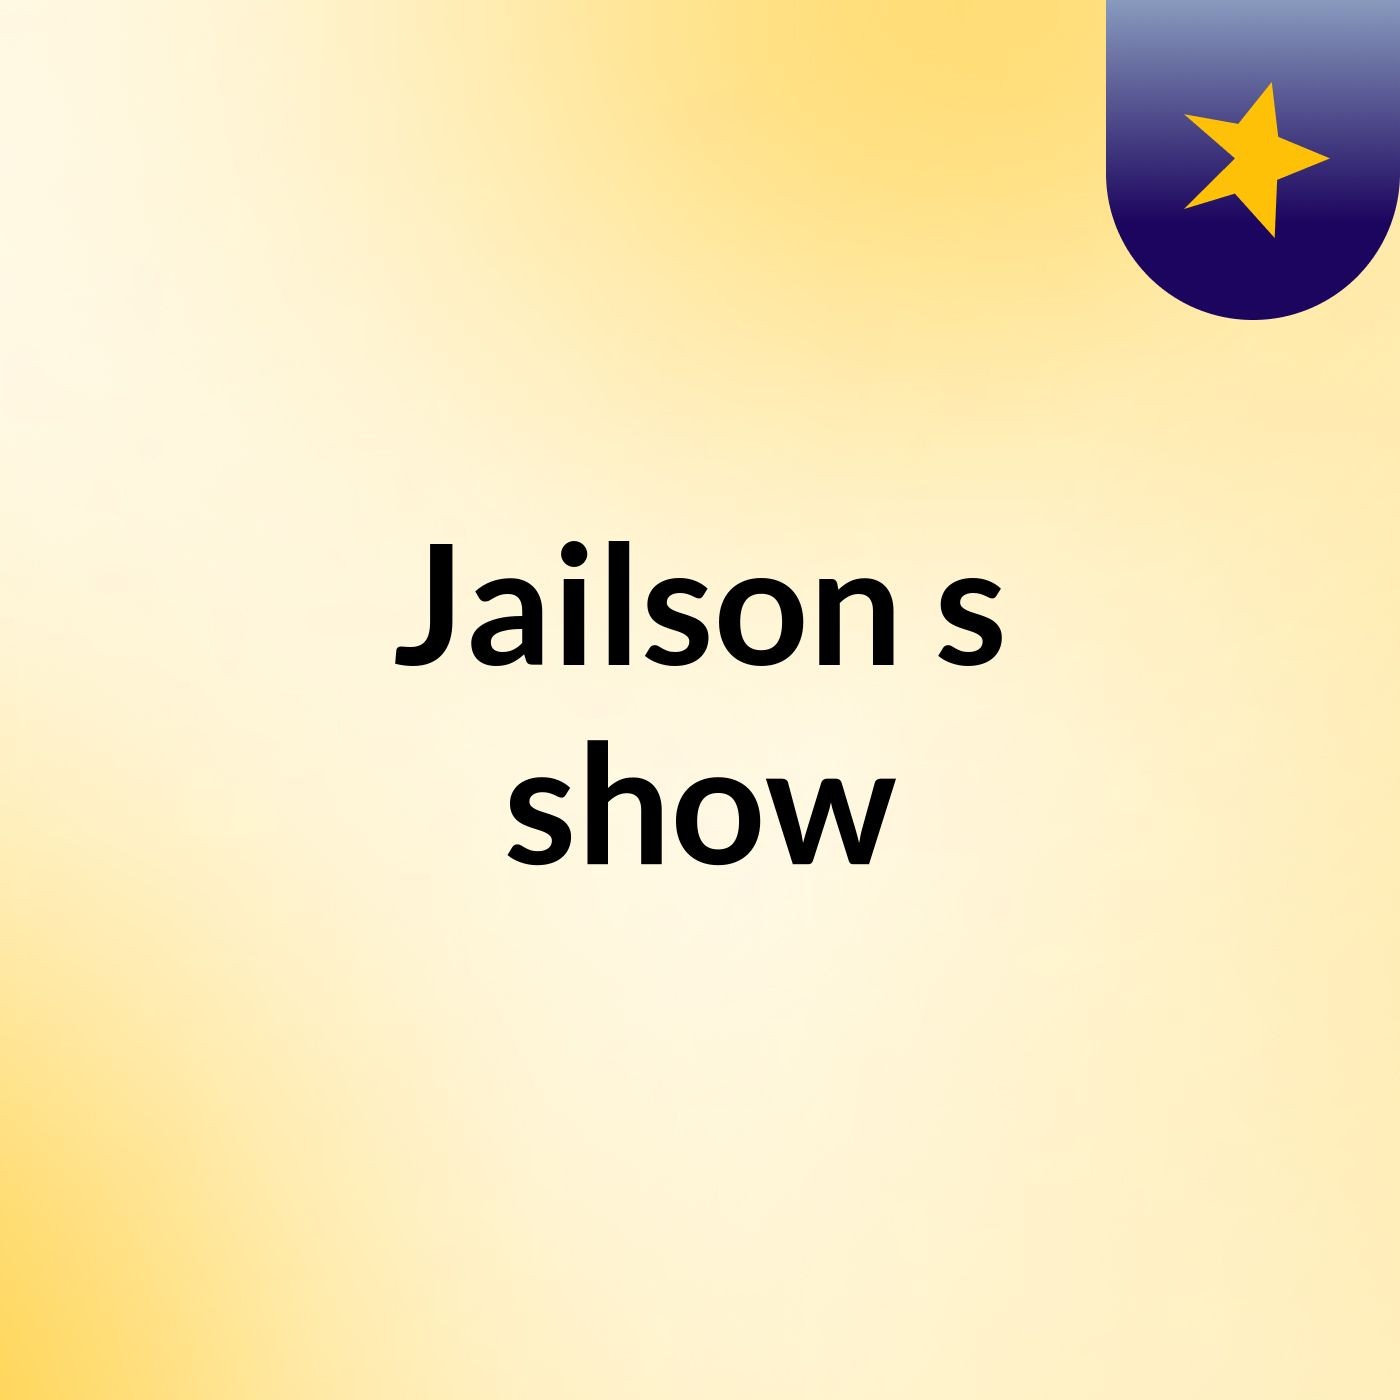 Jailson's show